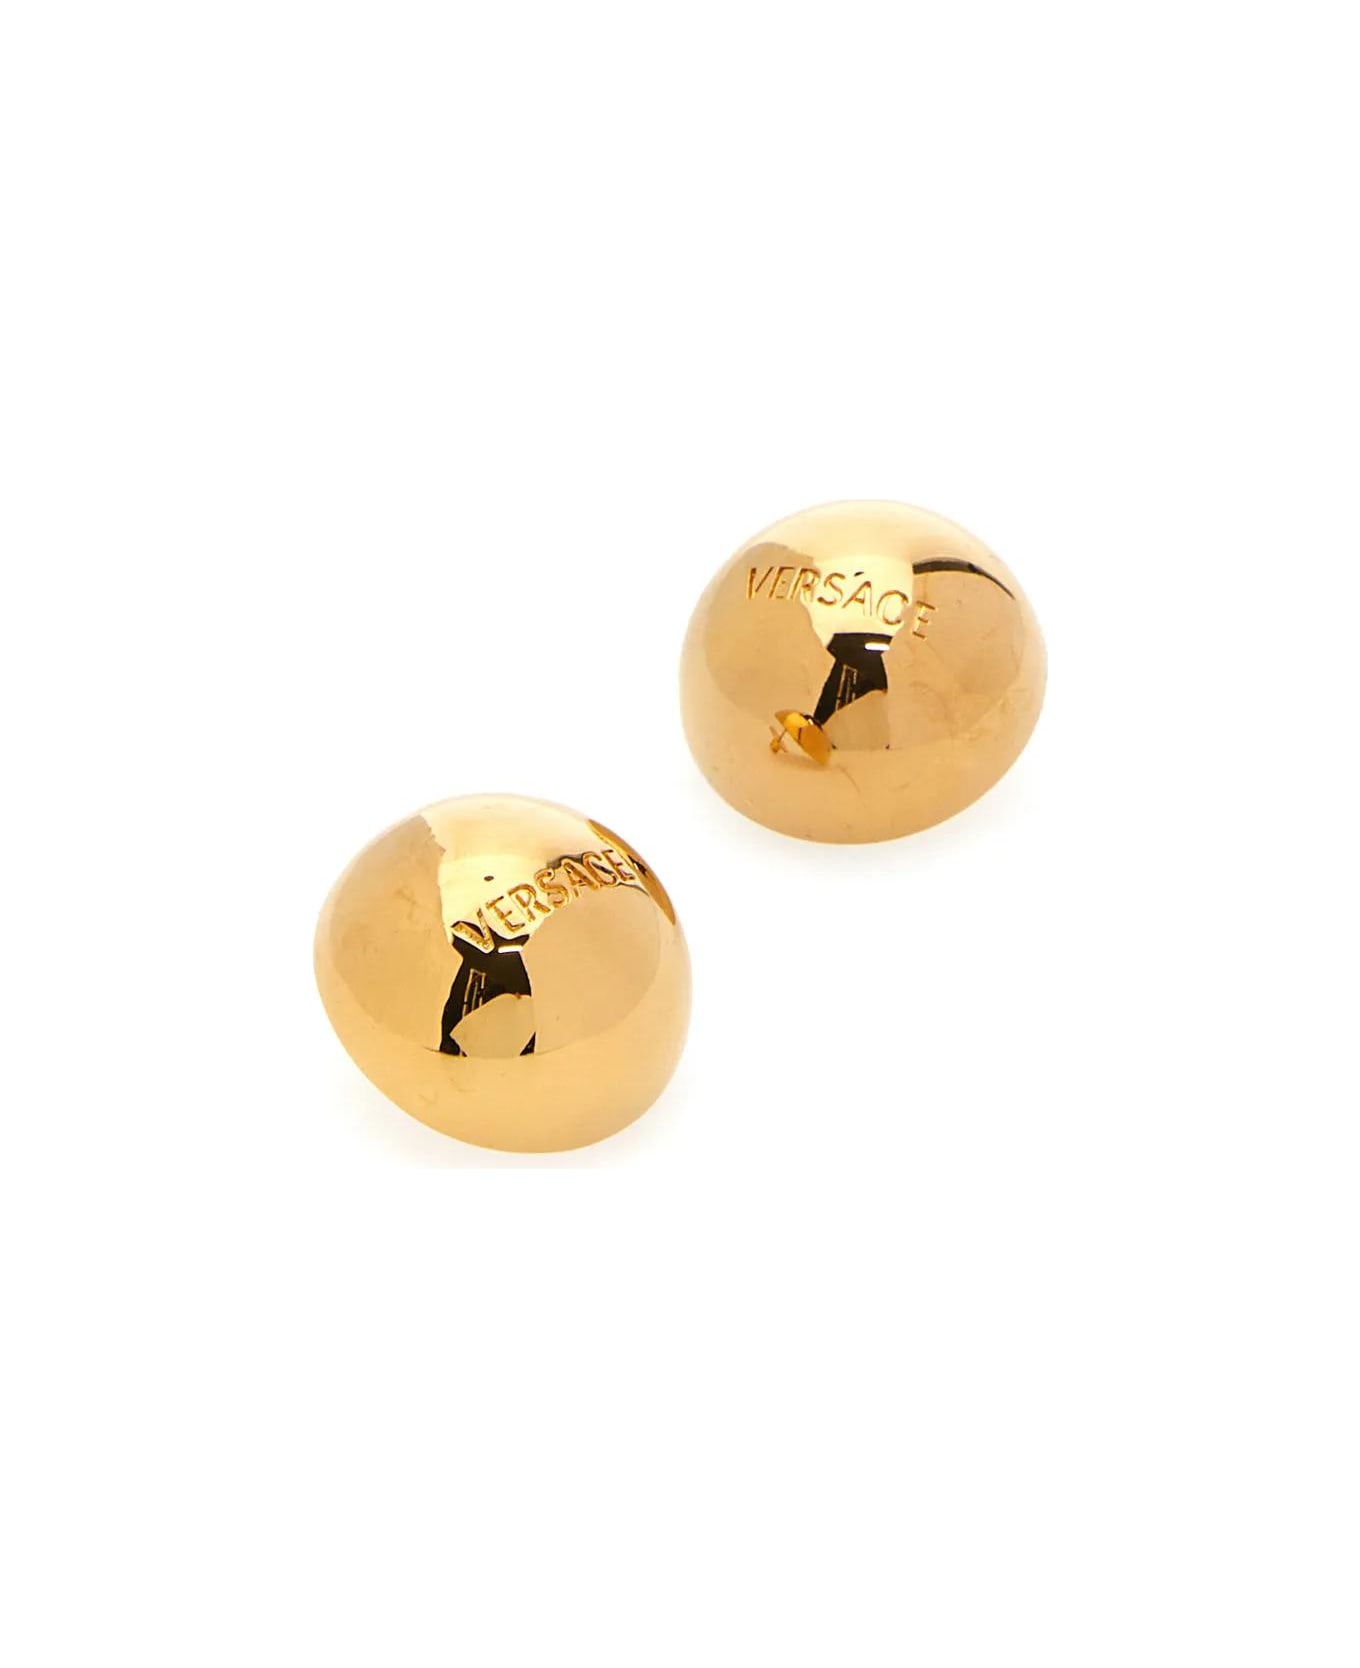 Versace Golden Metal Earrings - Giallo